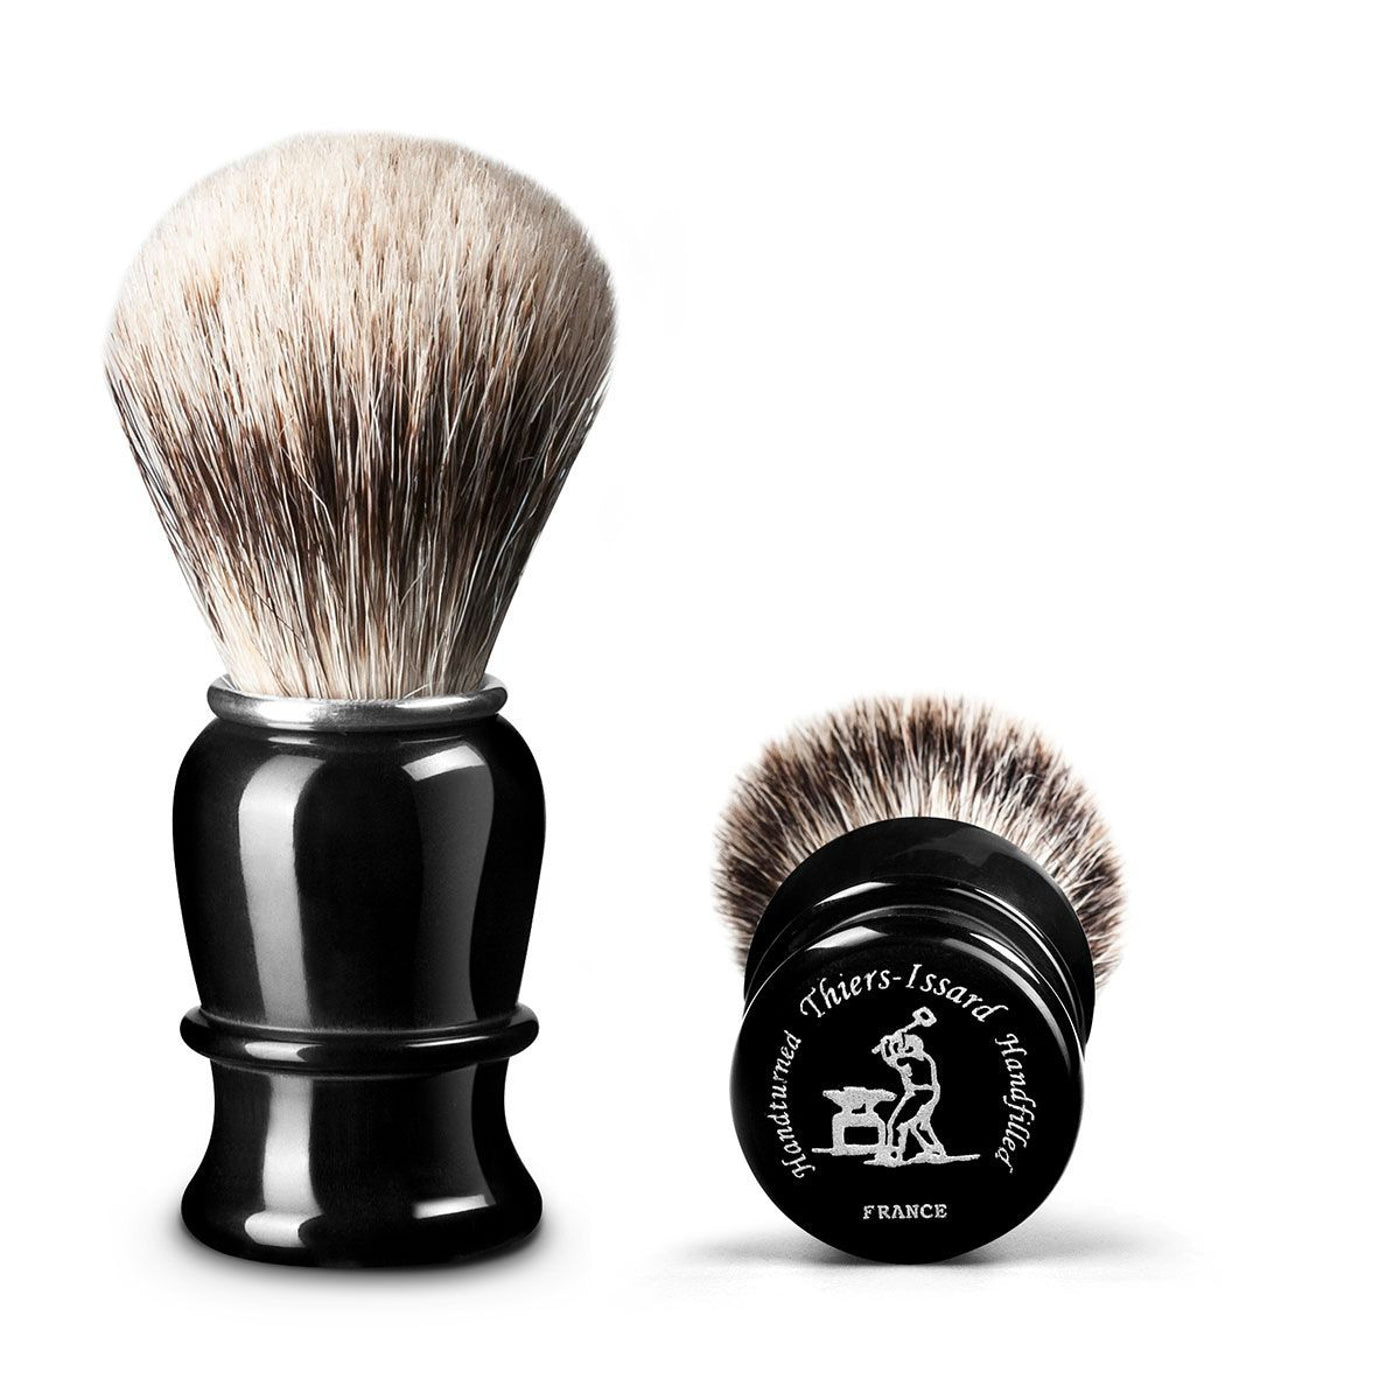 Thiers Issard Black Horn Super Badger 23mm Shaving Brush